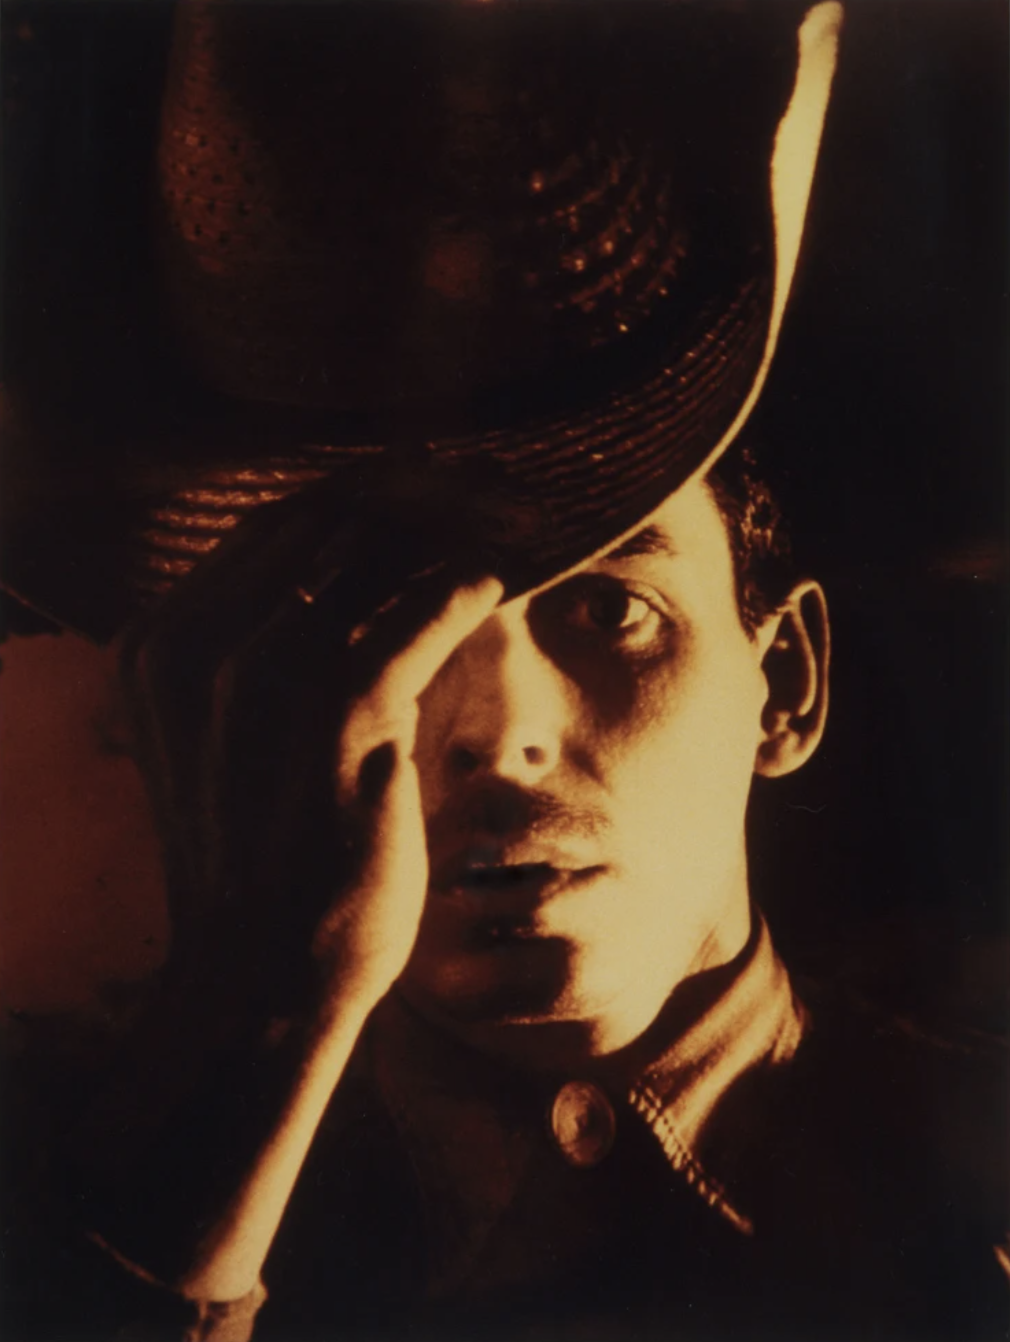 Jimmy DeSana, Smoke Cowboy, 1985. Vintage Cibachrome print, 43.3 x 26 cm, 17 1/8 x 10 1/4 ins, image size.